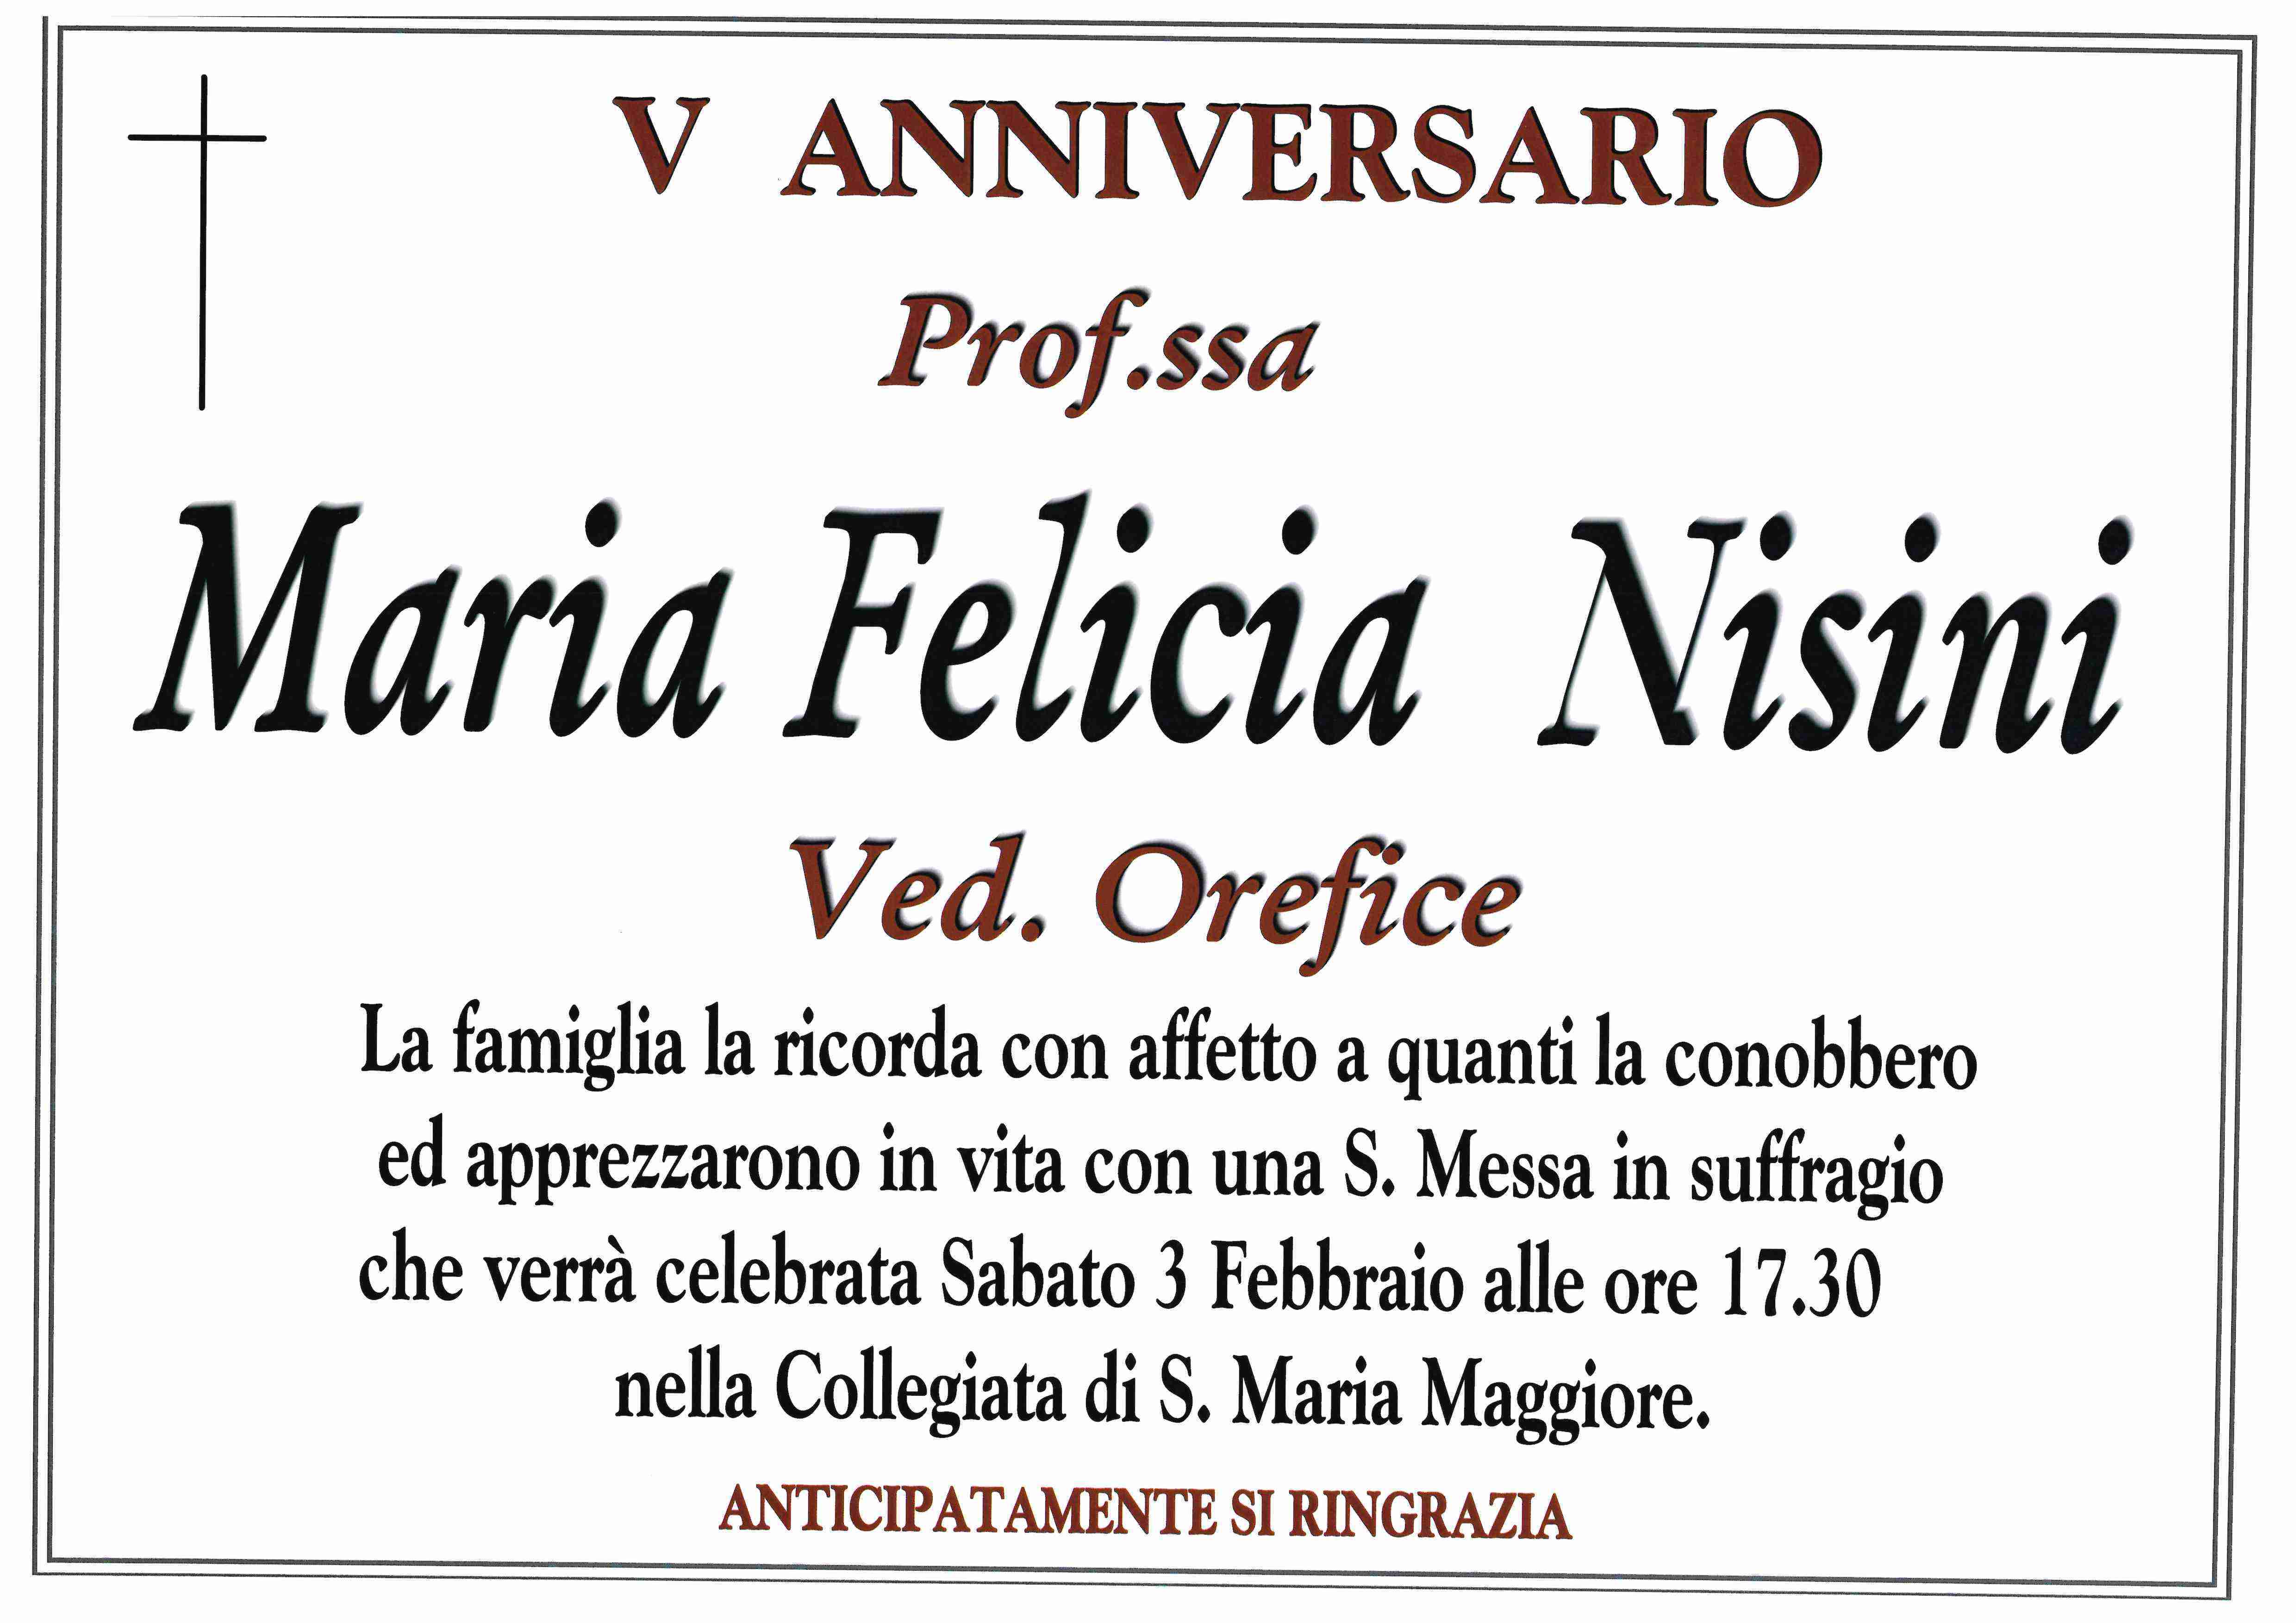 Felicia Nisini